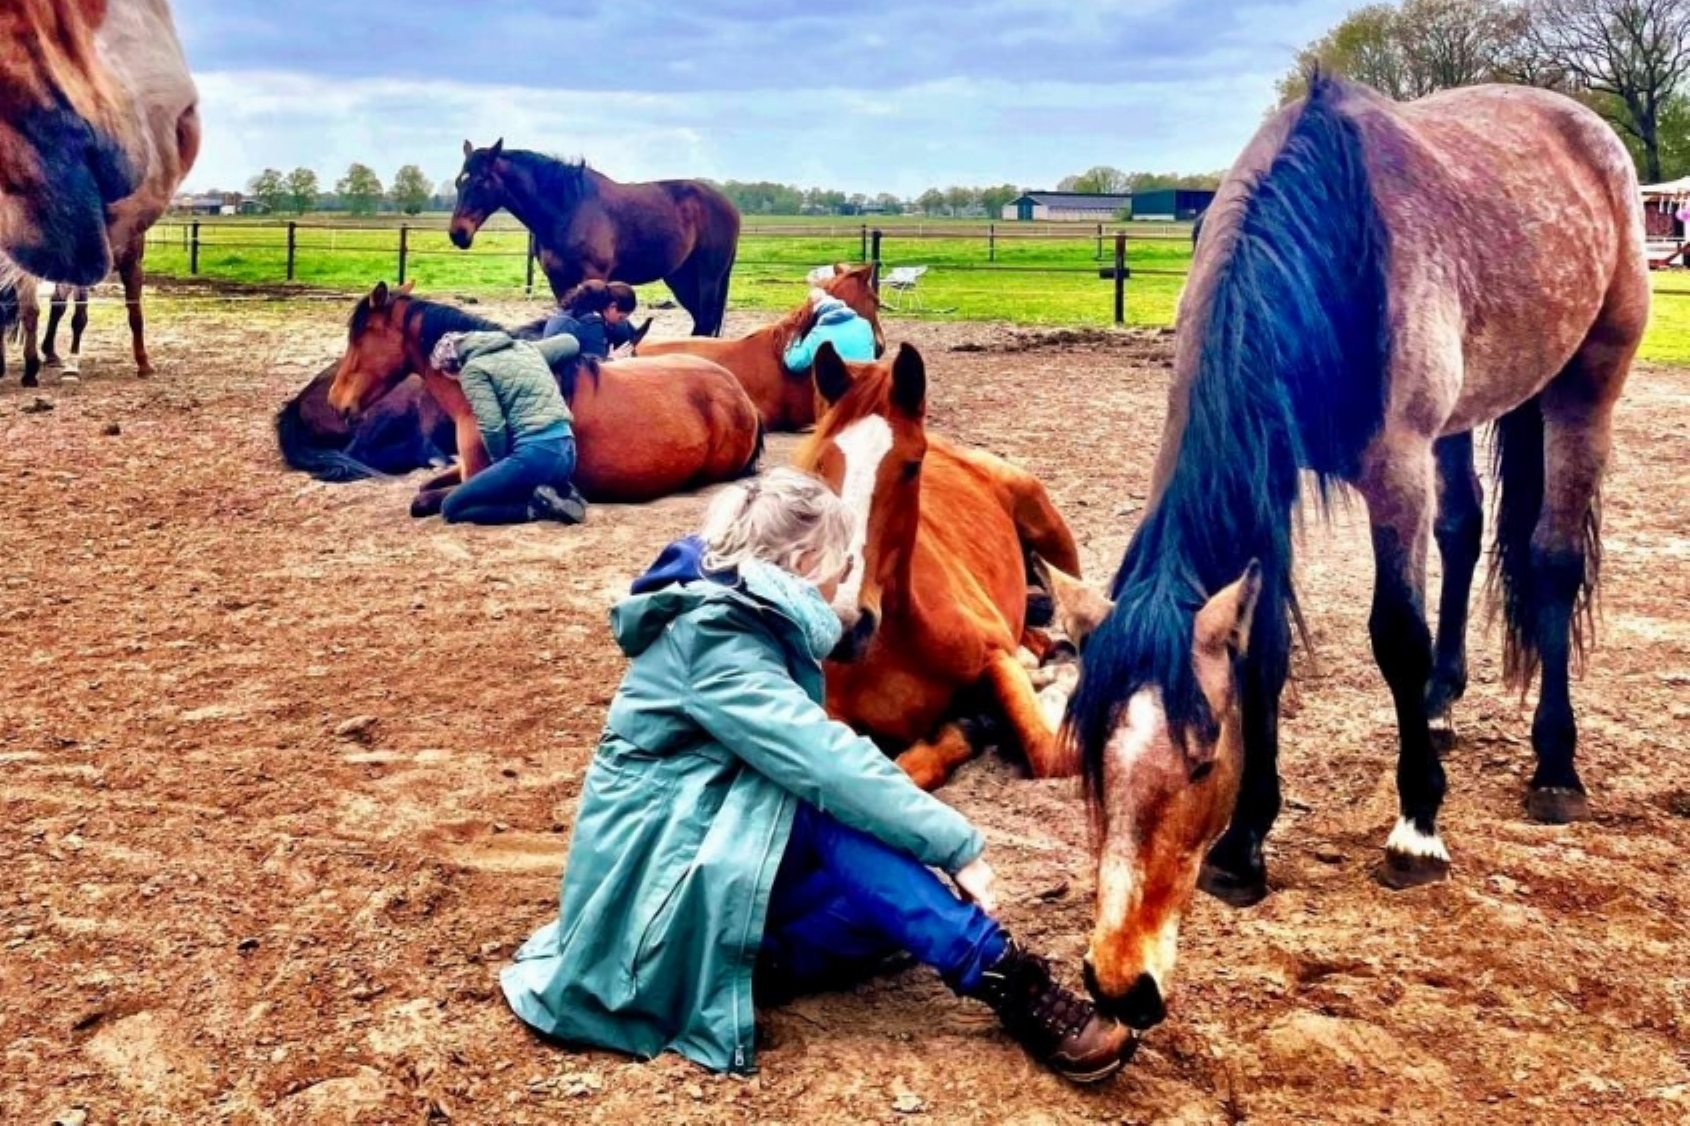 Healing op de haar: Sjamanistische healing, coaching in cohesie met paarden & Guasha therapie